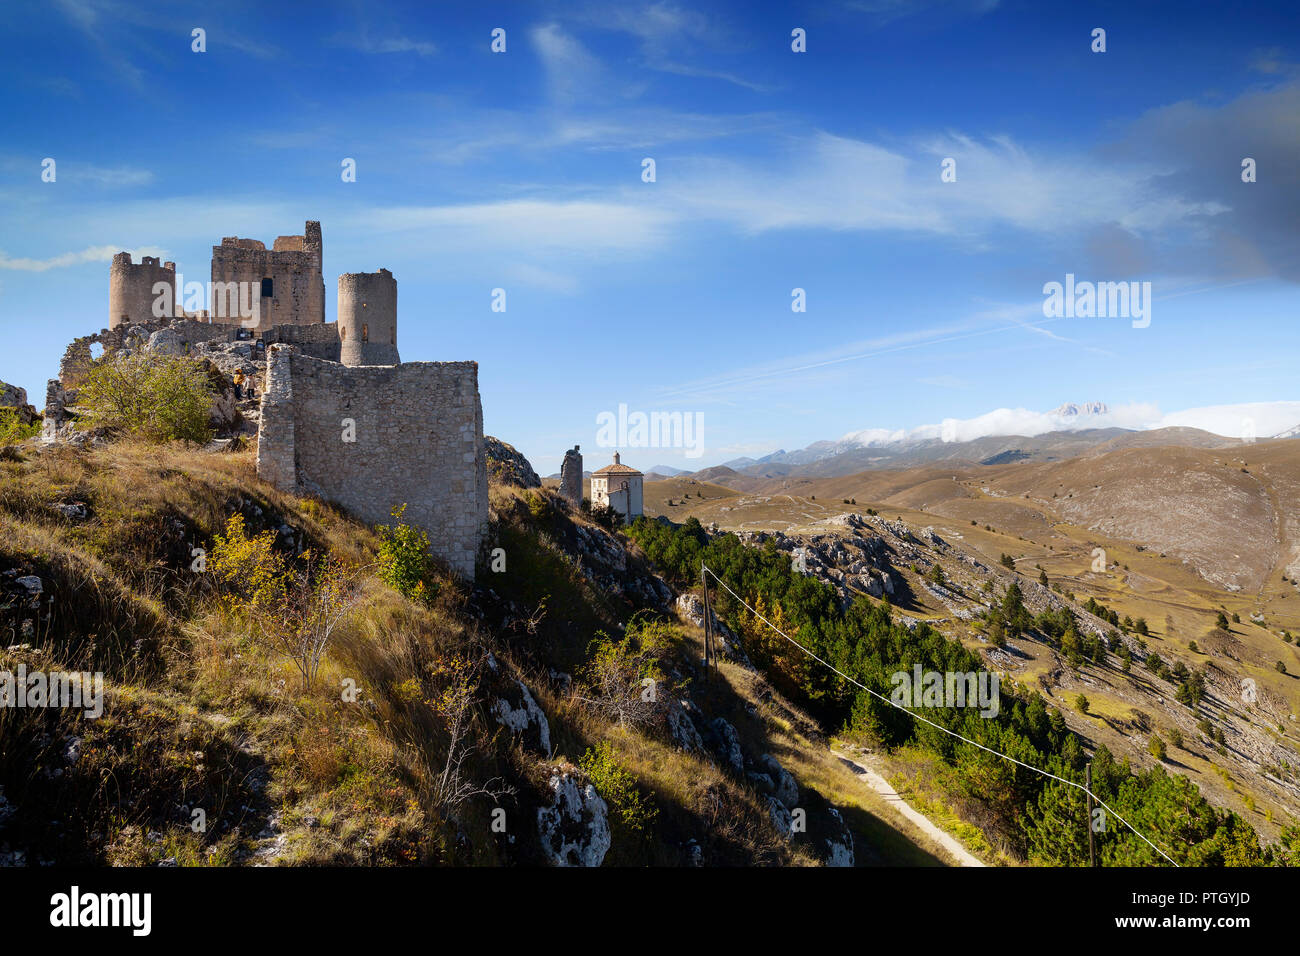 El siglo 10 Rocca Calascio, la cima de una montaña, cerca de la fortaleza de hilltown Santo Stefano di Sessanio, en la provincia de L'Aquila en Abruzzo, Italia. Foto de stock